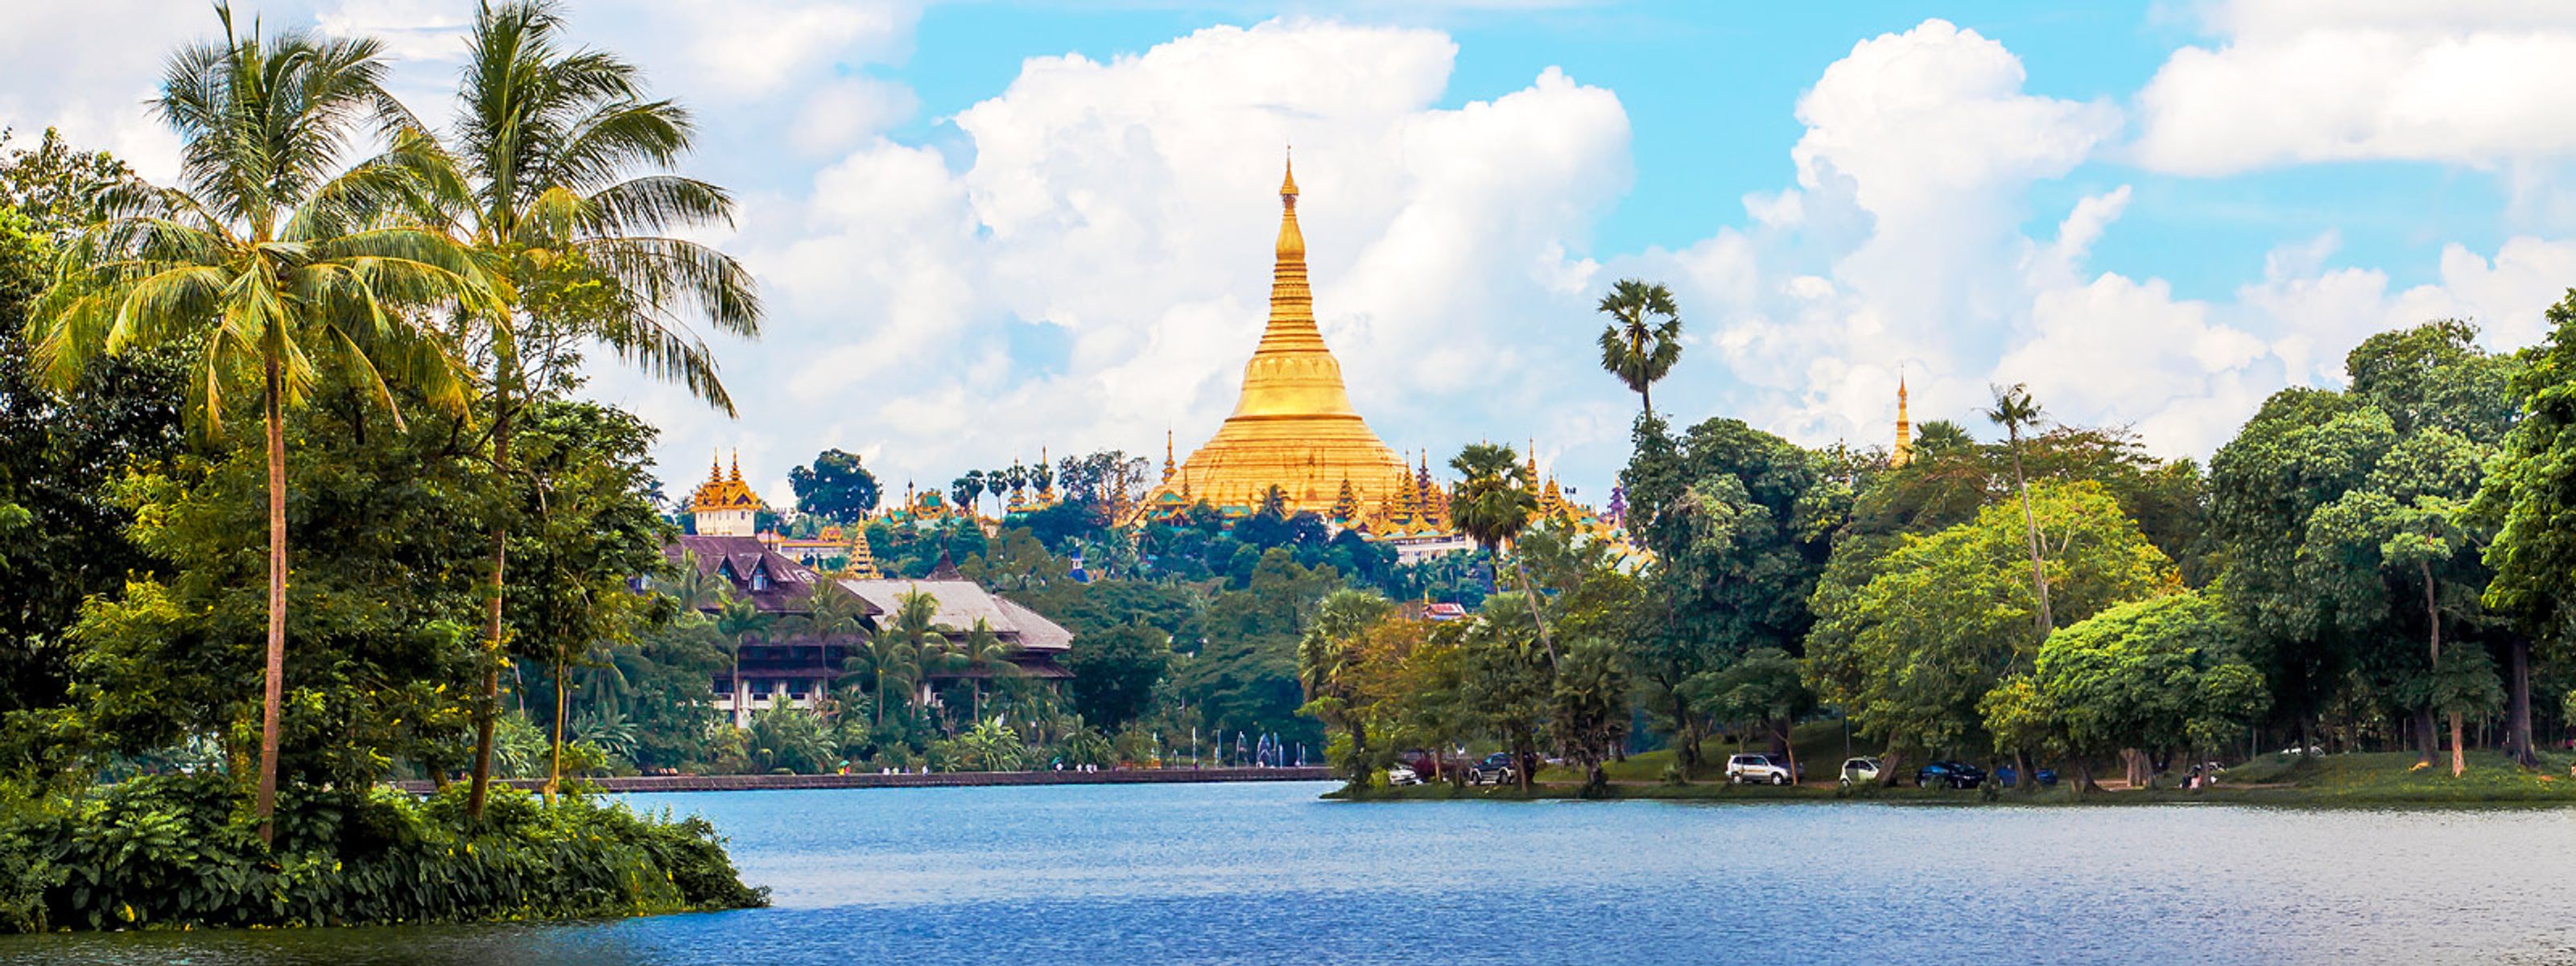 Blick auf die Shwedagon-Pagode in Yangon, Myanmar